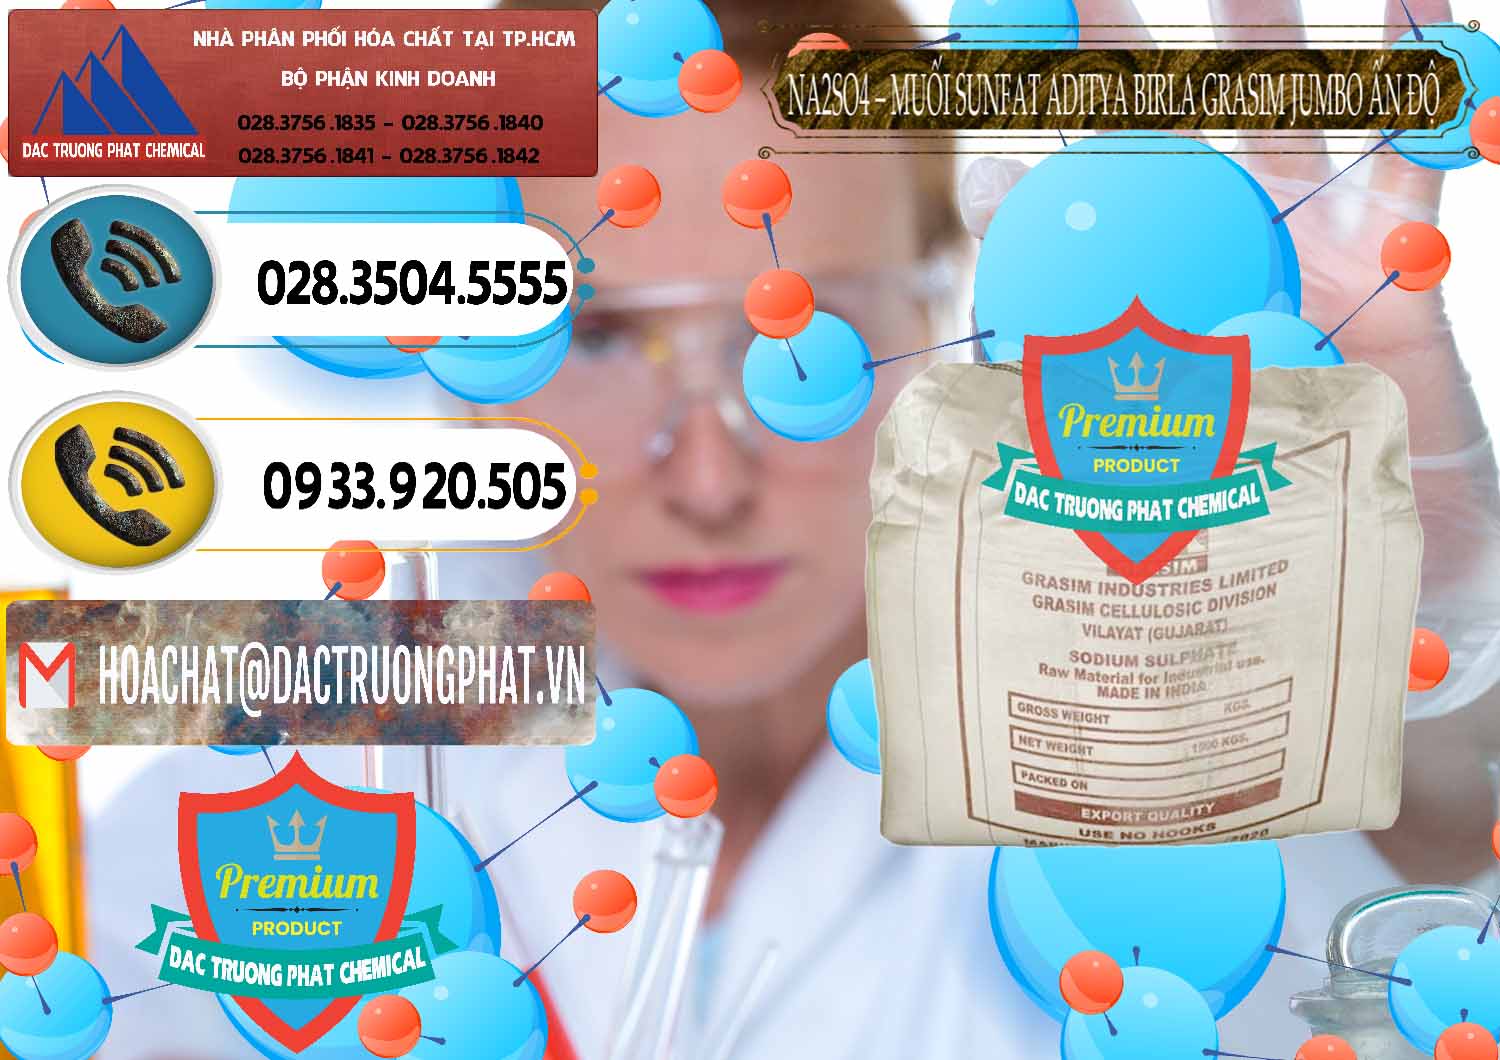 Chuyên kinh doanh ( bán ) Sodium Sulphate - Muối Sunfat Na2SO4 Jumbo Bành Aditya Birla Grasim Ấn Độ India - 0357 - Nhập khẩu & cung cấp hóa chất tại TP.HCM - hoachatdetnhuom.vn